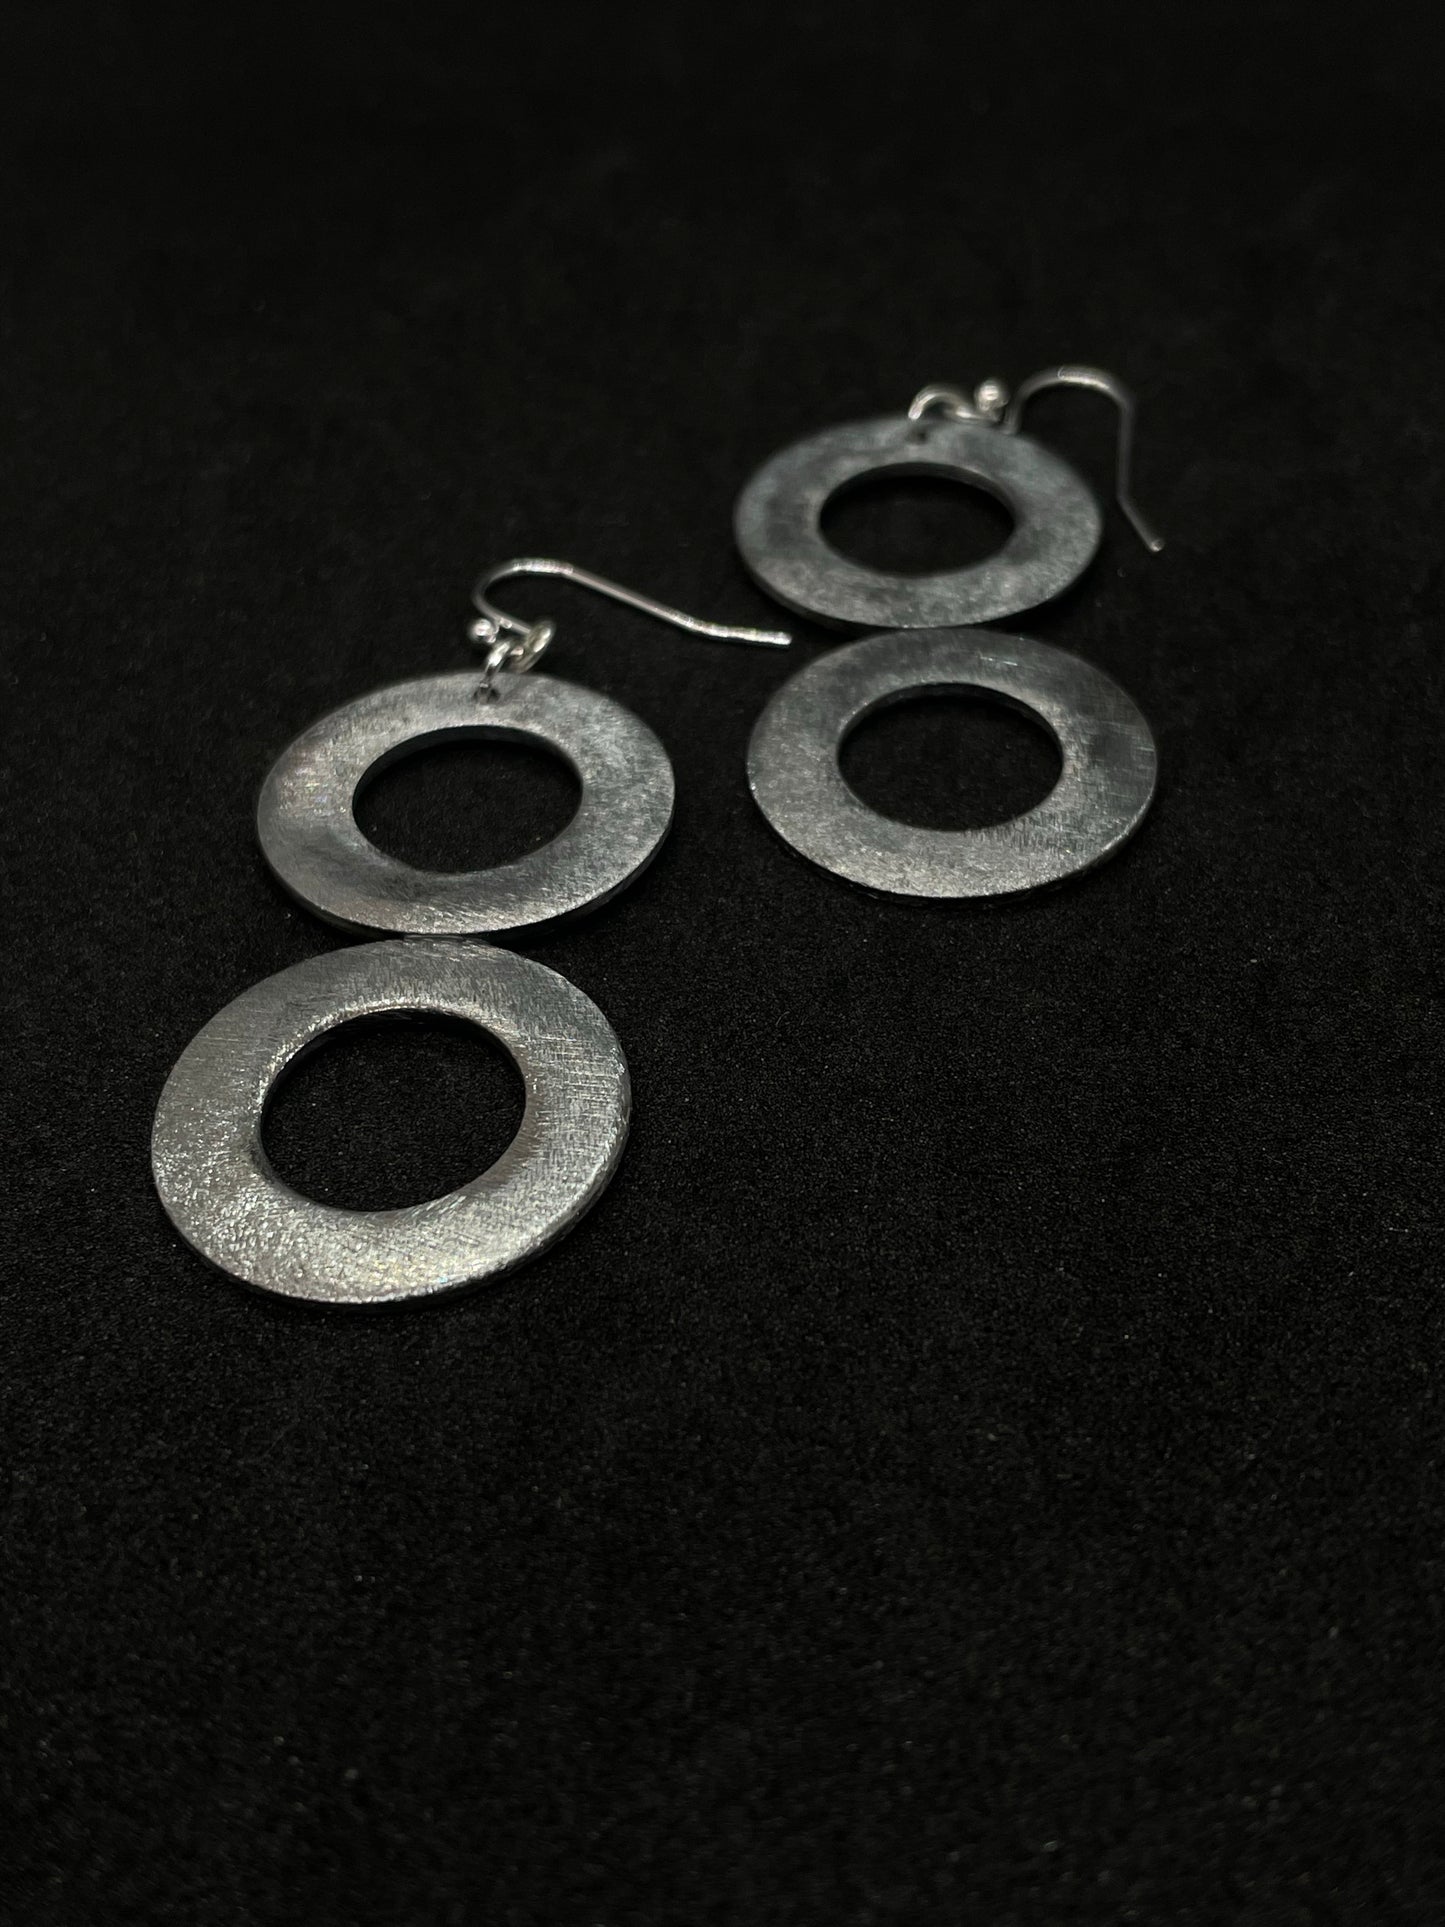 2 steel rings, drop earrings.